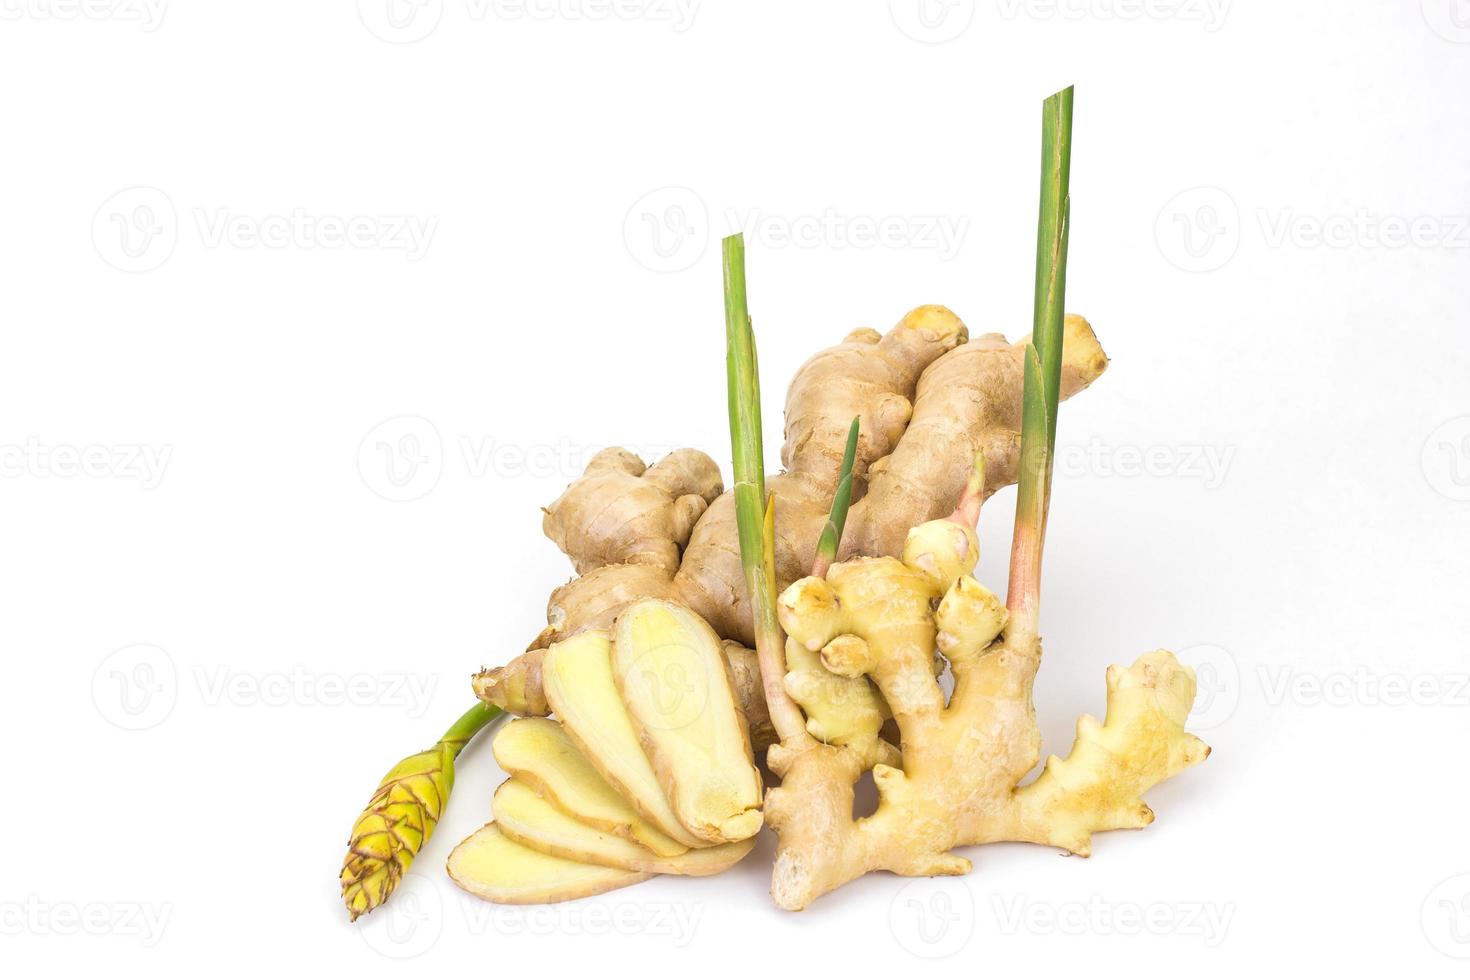 o gengibre e gengibre flor de fundo branco gengibre é uma planta anual. com rizomas subterrâneos a casca externa é marrom amarelada. a carne na cor barro tem uma fragrância única. foto